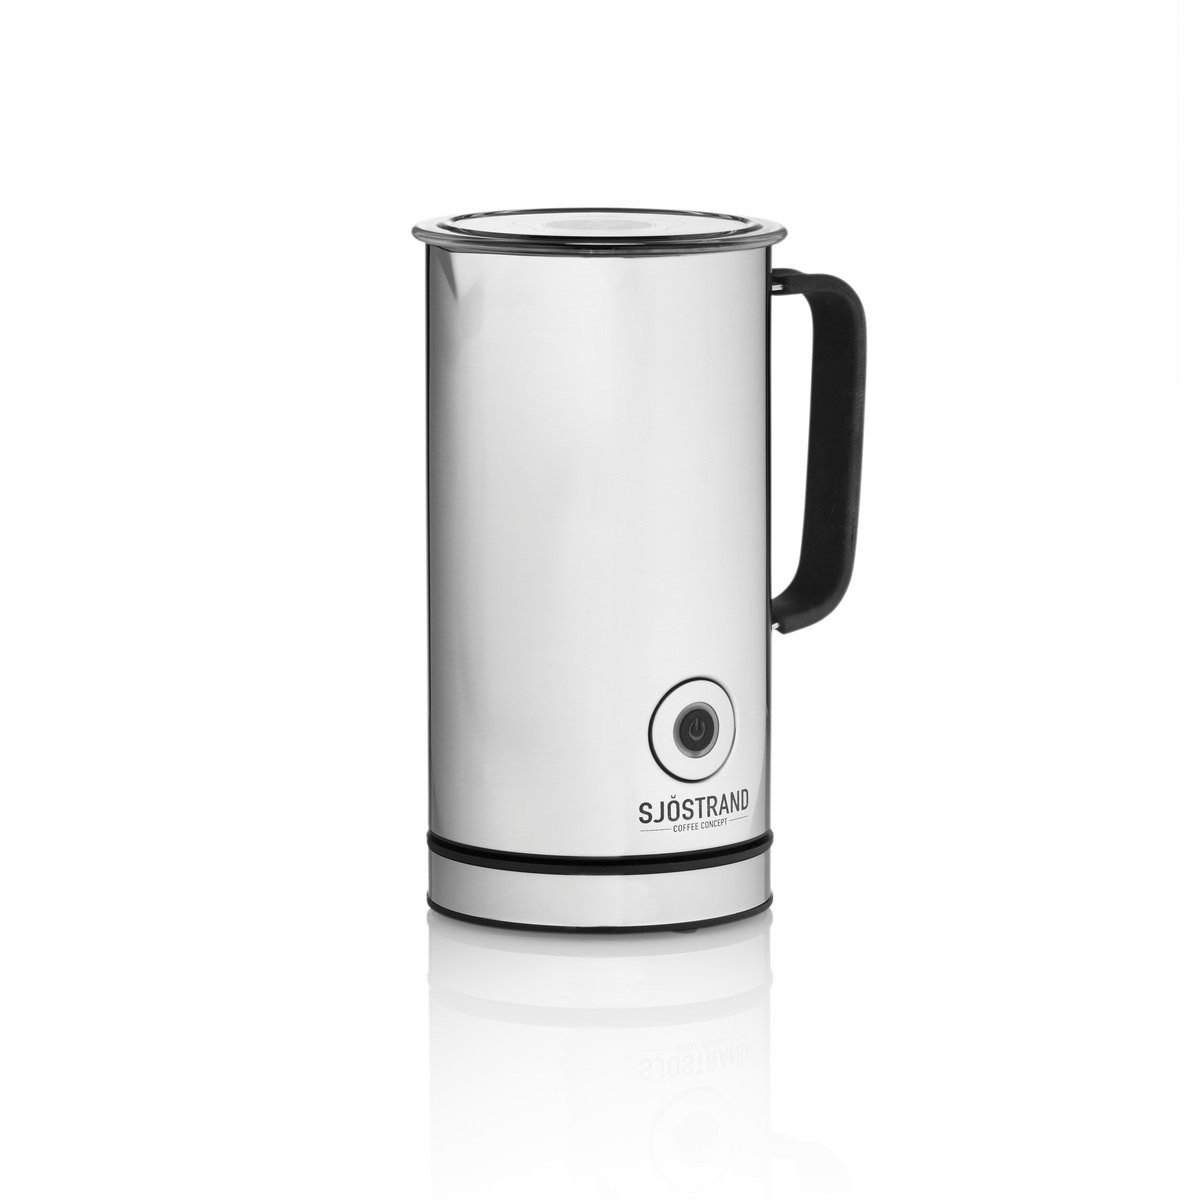 Sjöstrand Kaffee- /Teestation Milk Frother